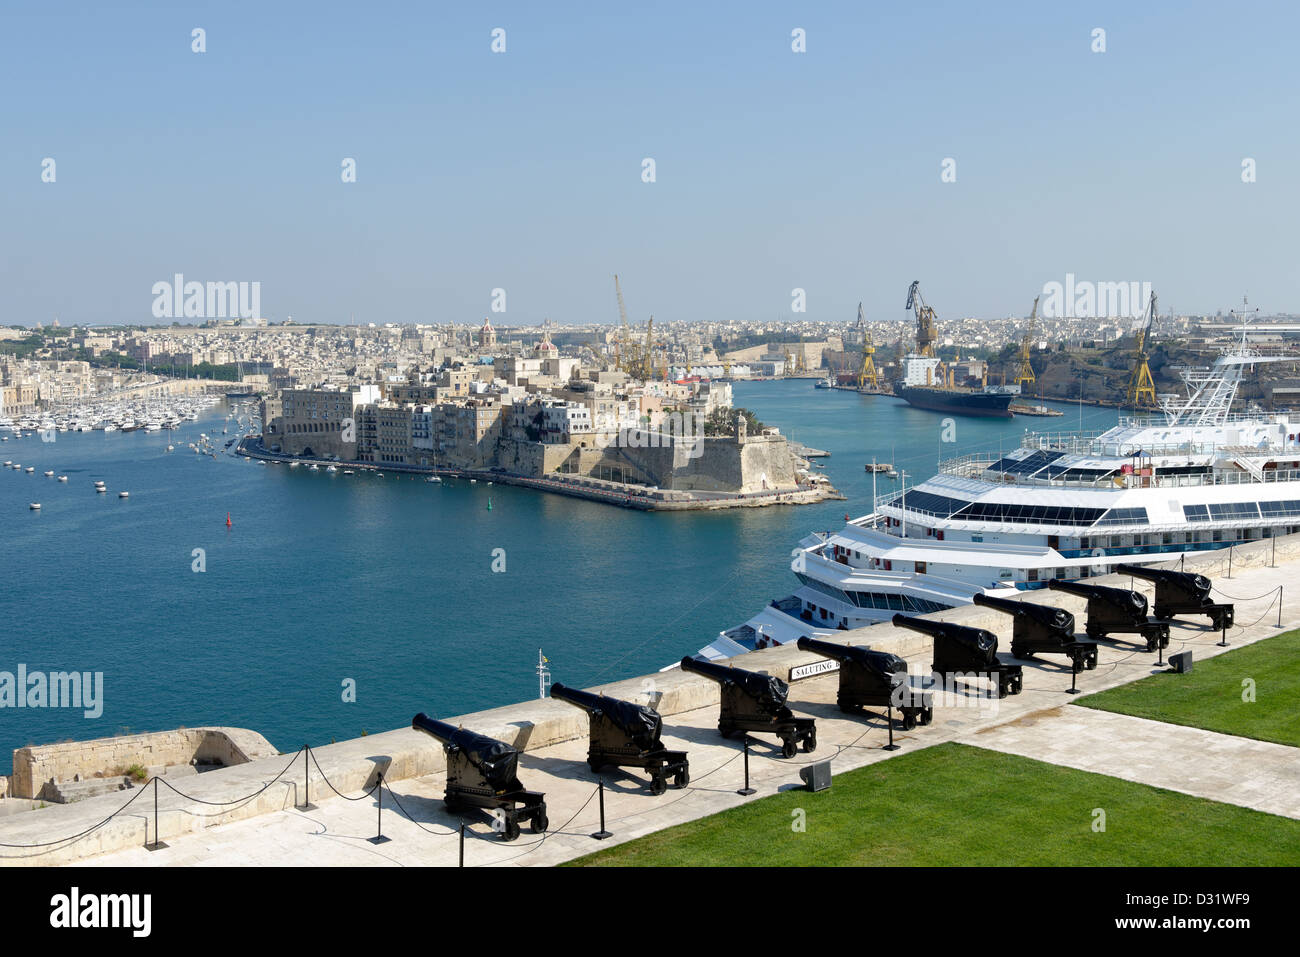 Grand Harbour. Valletta. Malta. Historischen grand Hauptstadt von Malta ist ein ausgewiesenen UNESCO World Heritage Site. Stockfoto